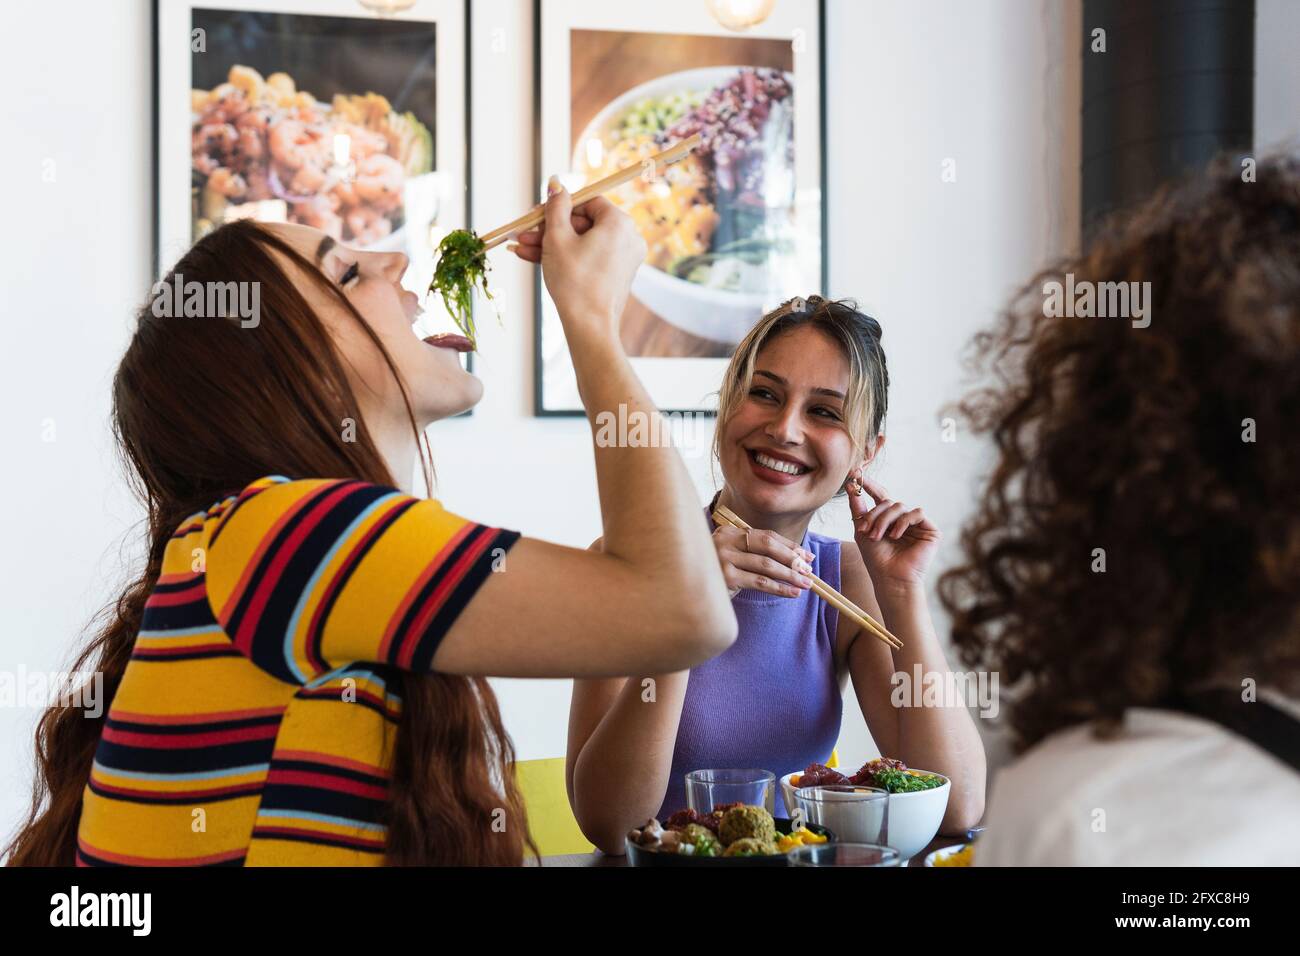 Lächelnde junge Frau, die eine Freundin beim Essen mit Essstäbchen im Restaurant ansieht Stockfoto